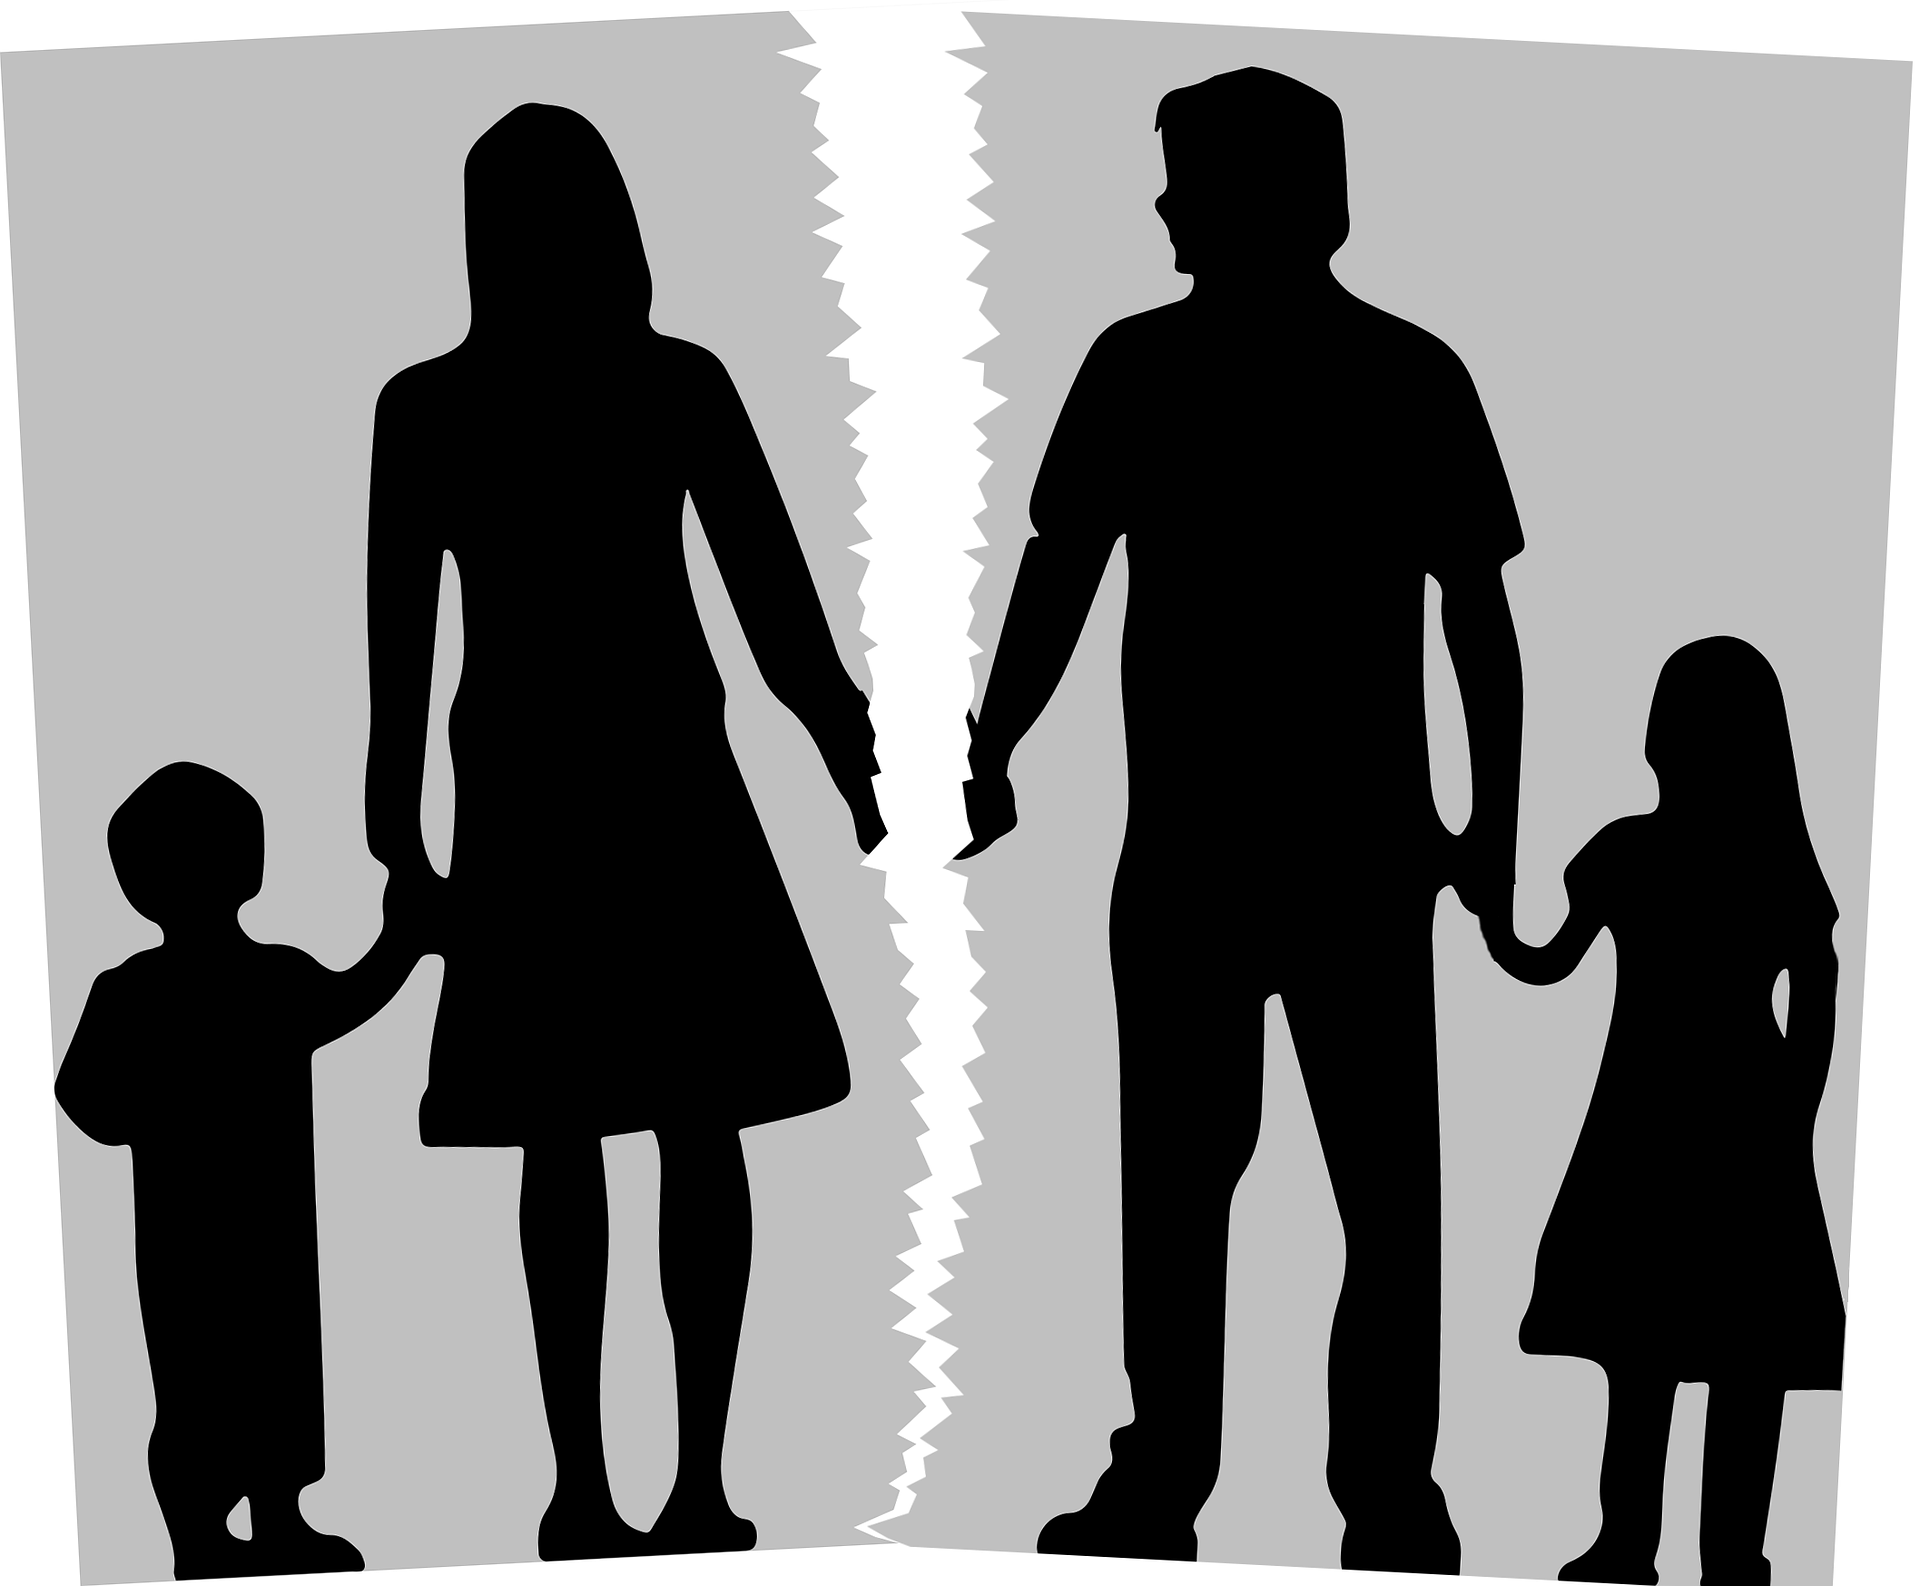 Eltern-Kind-Entfremdung (Parental Alienation Syndrom): Eine schwerwiegende Trennungsfolge